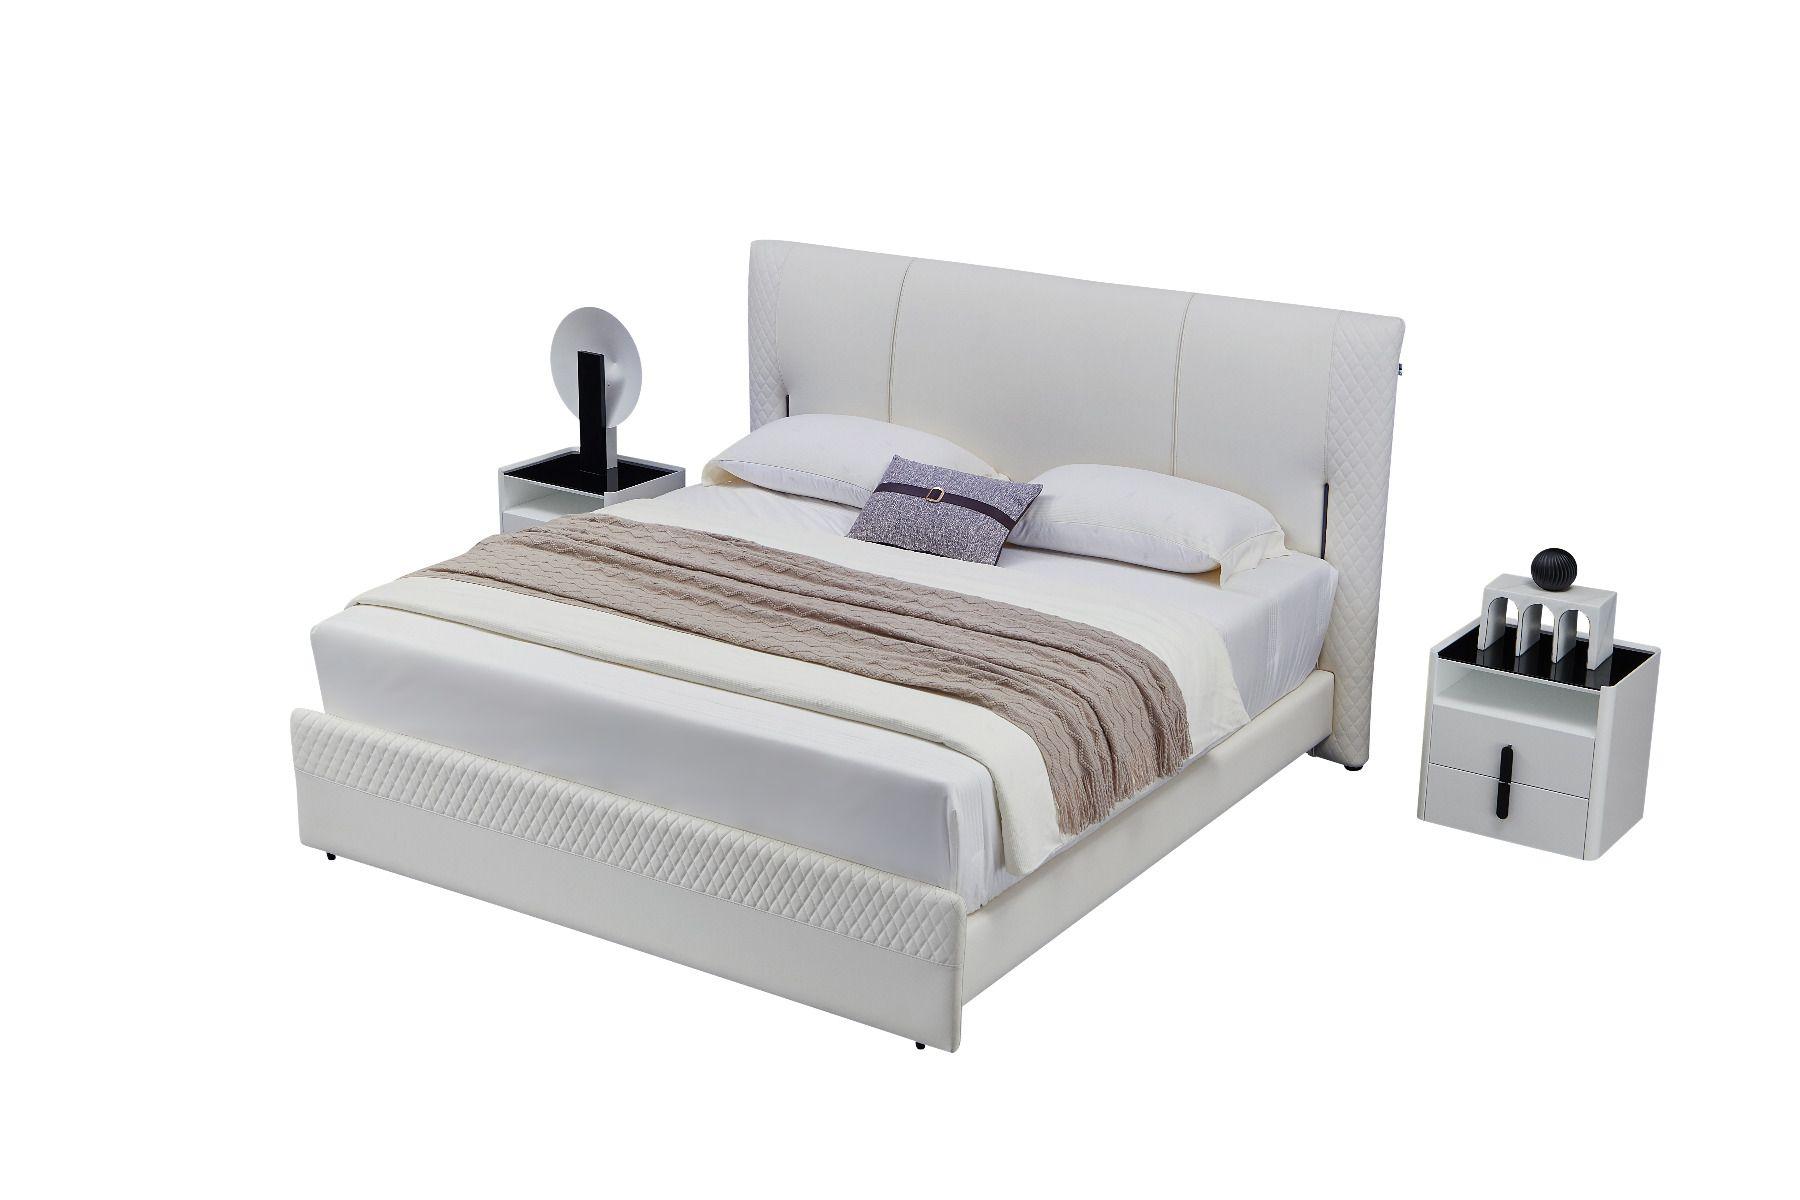 

    
American Eagle Furniture B-Y2003-CK / NS-Y2001 Platform Bedroom Set Gray B-Y2003-CK-3PC
